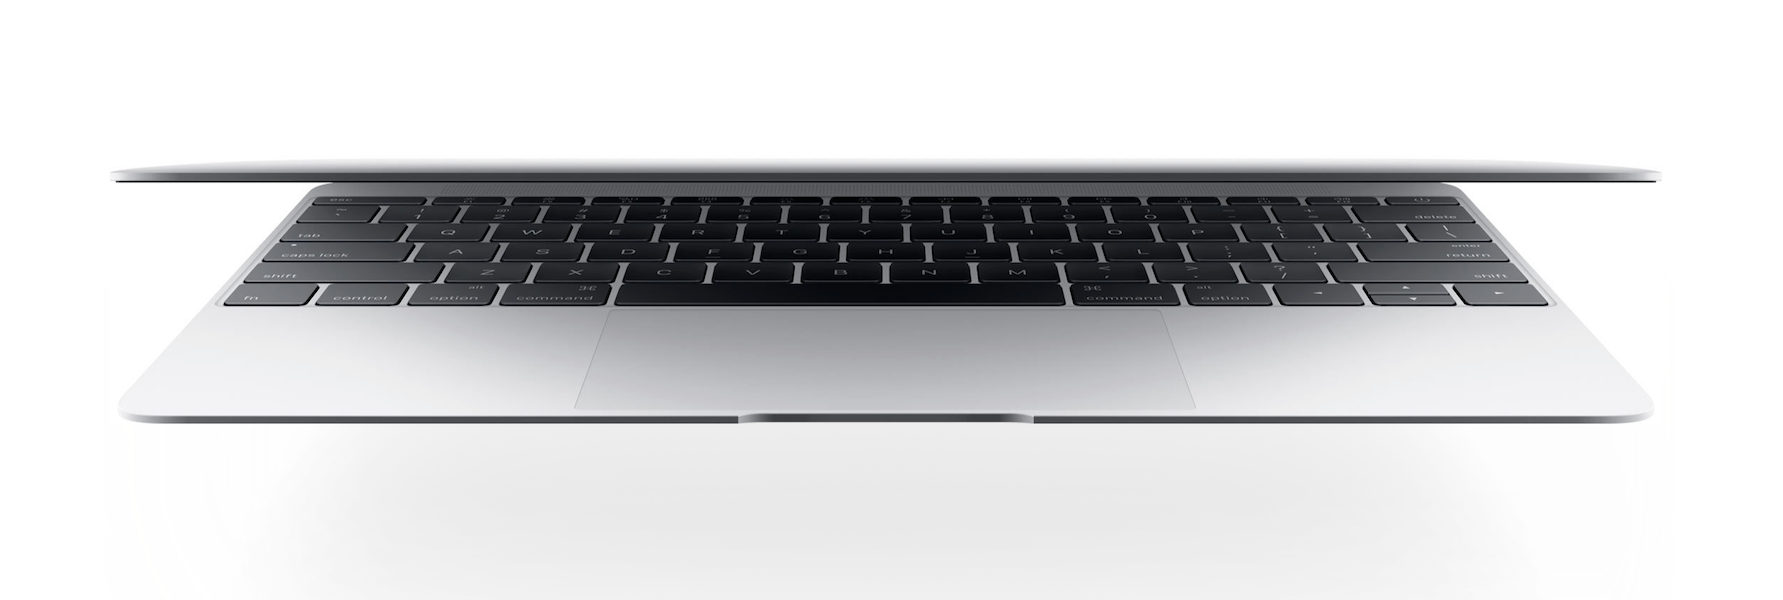 The new MacBook keyboard 7